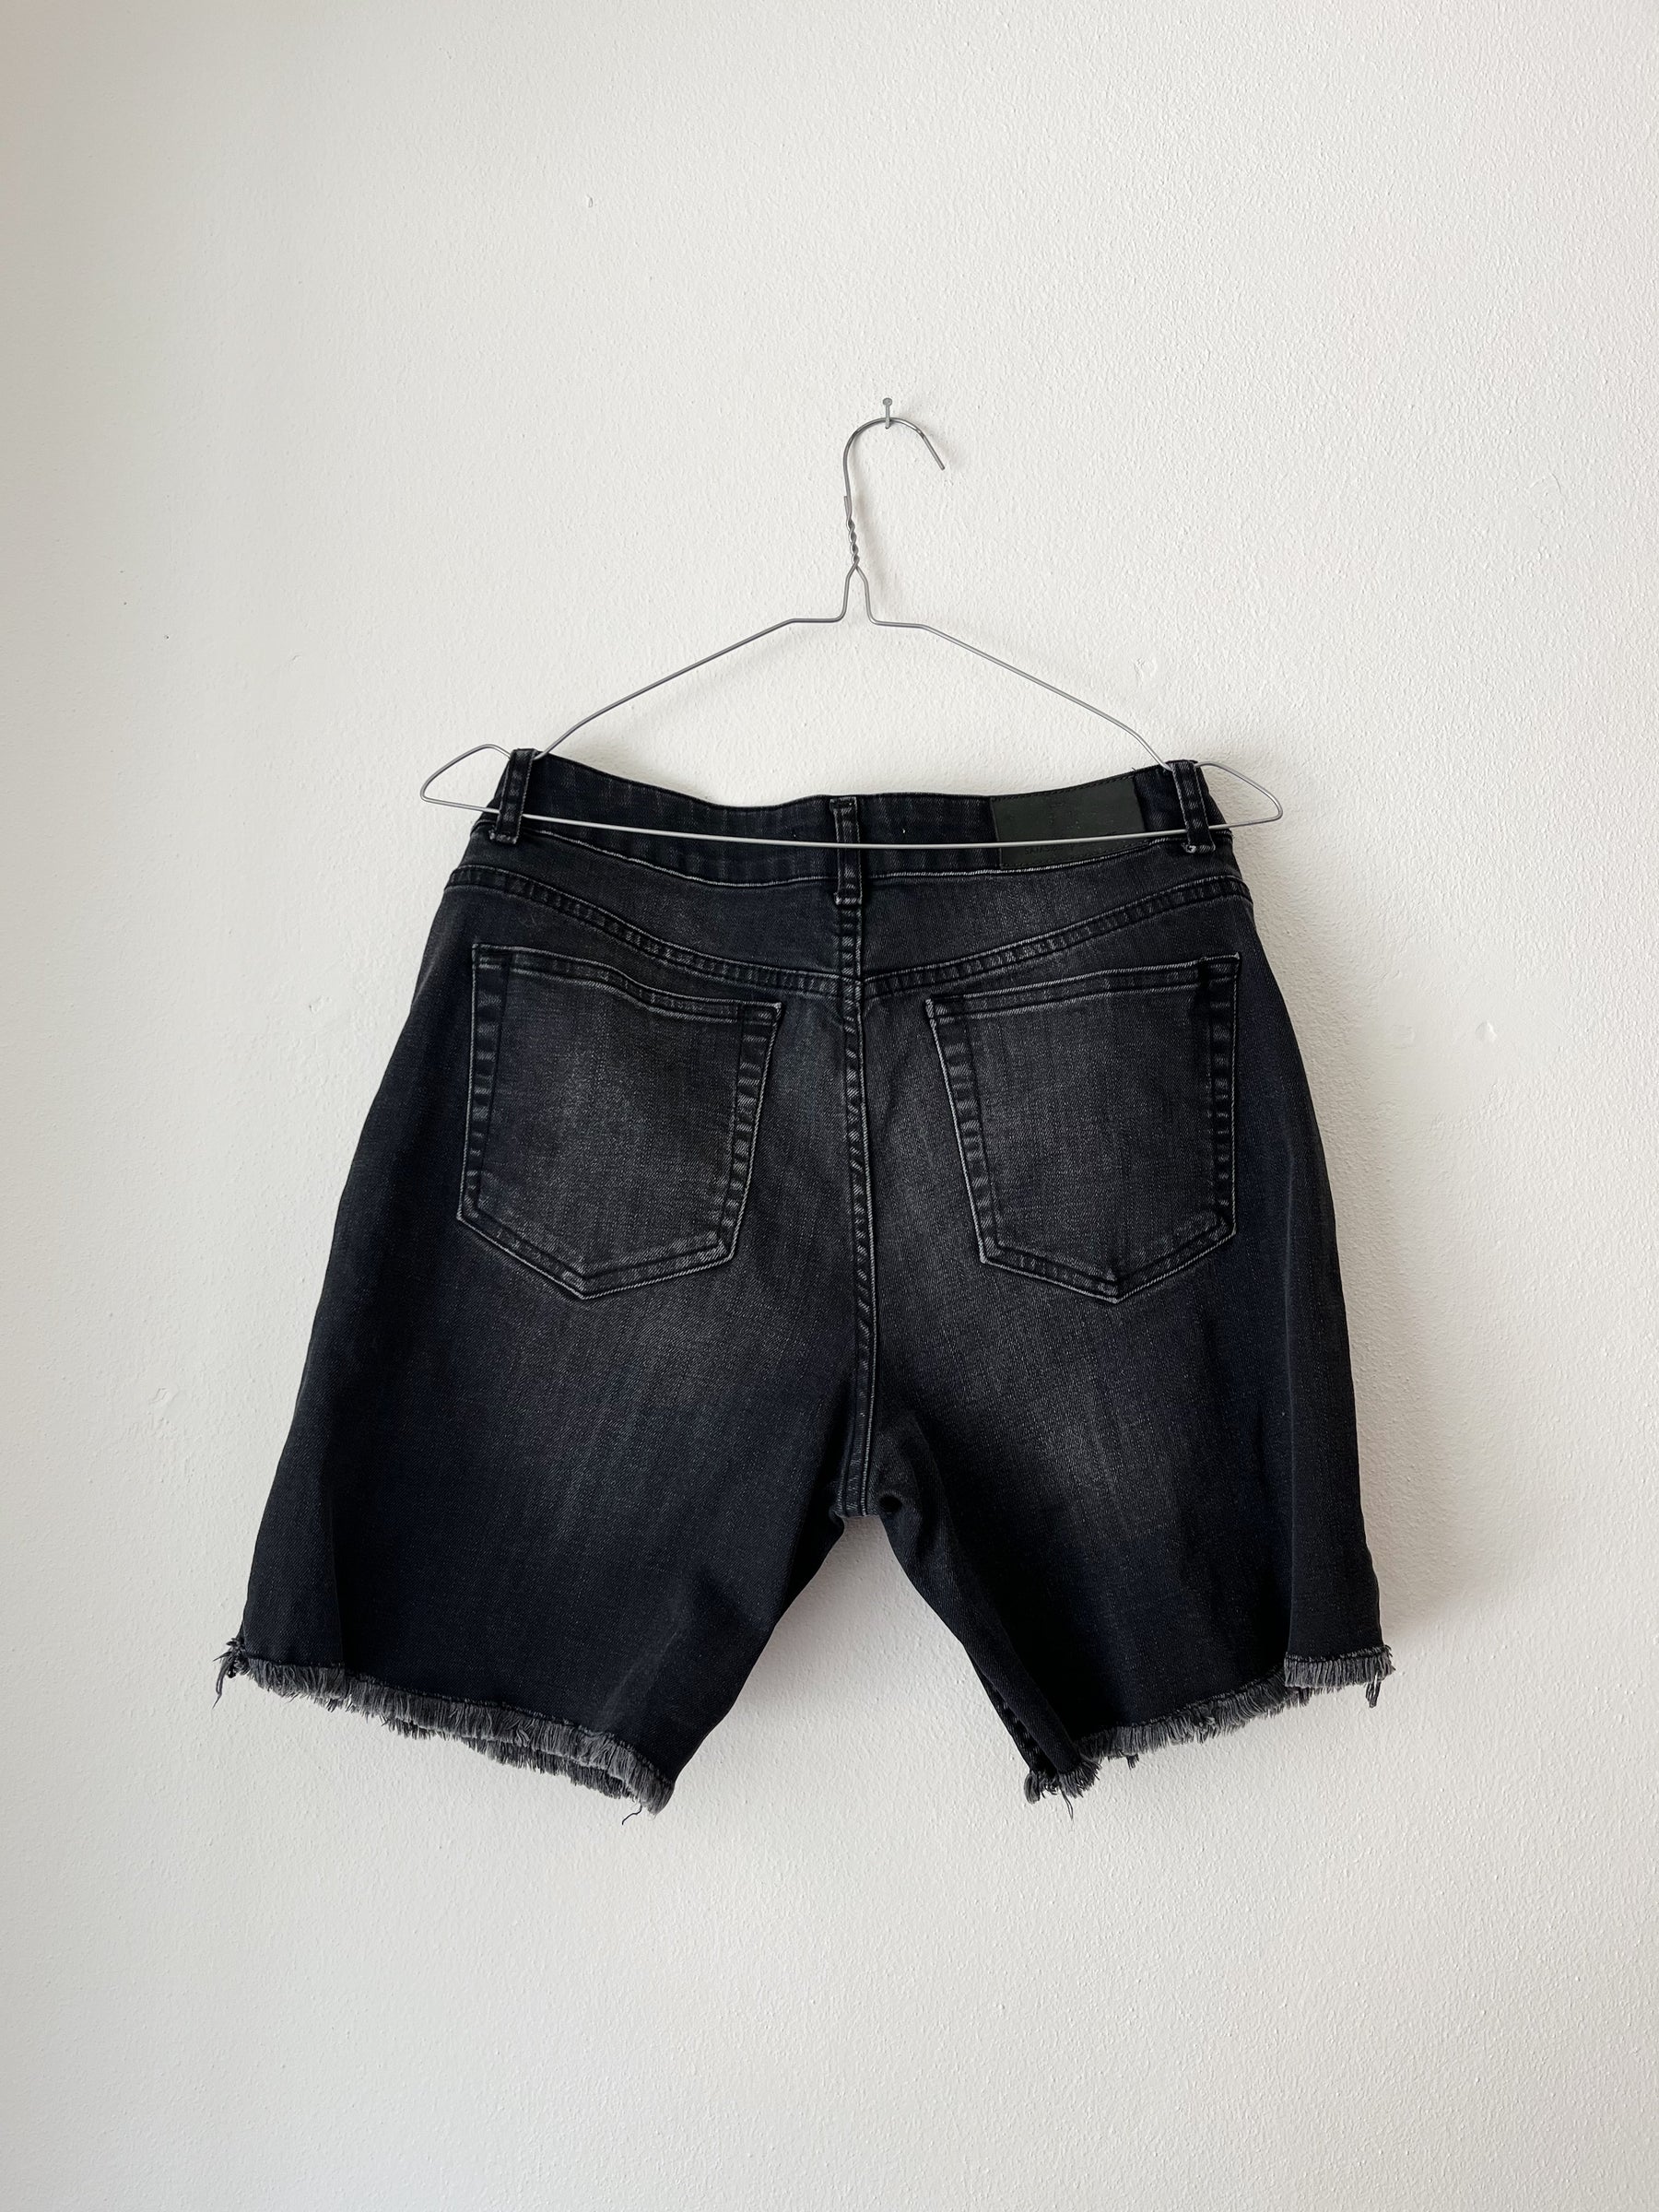 Samsøe Samsøe shorts